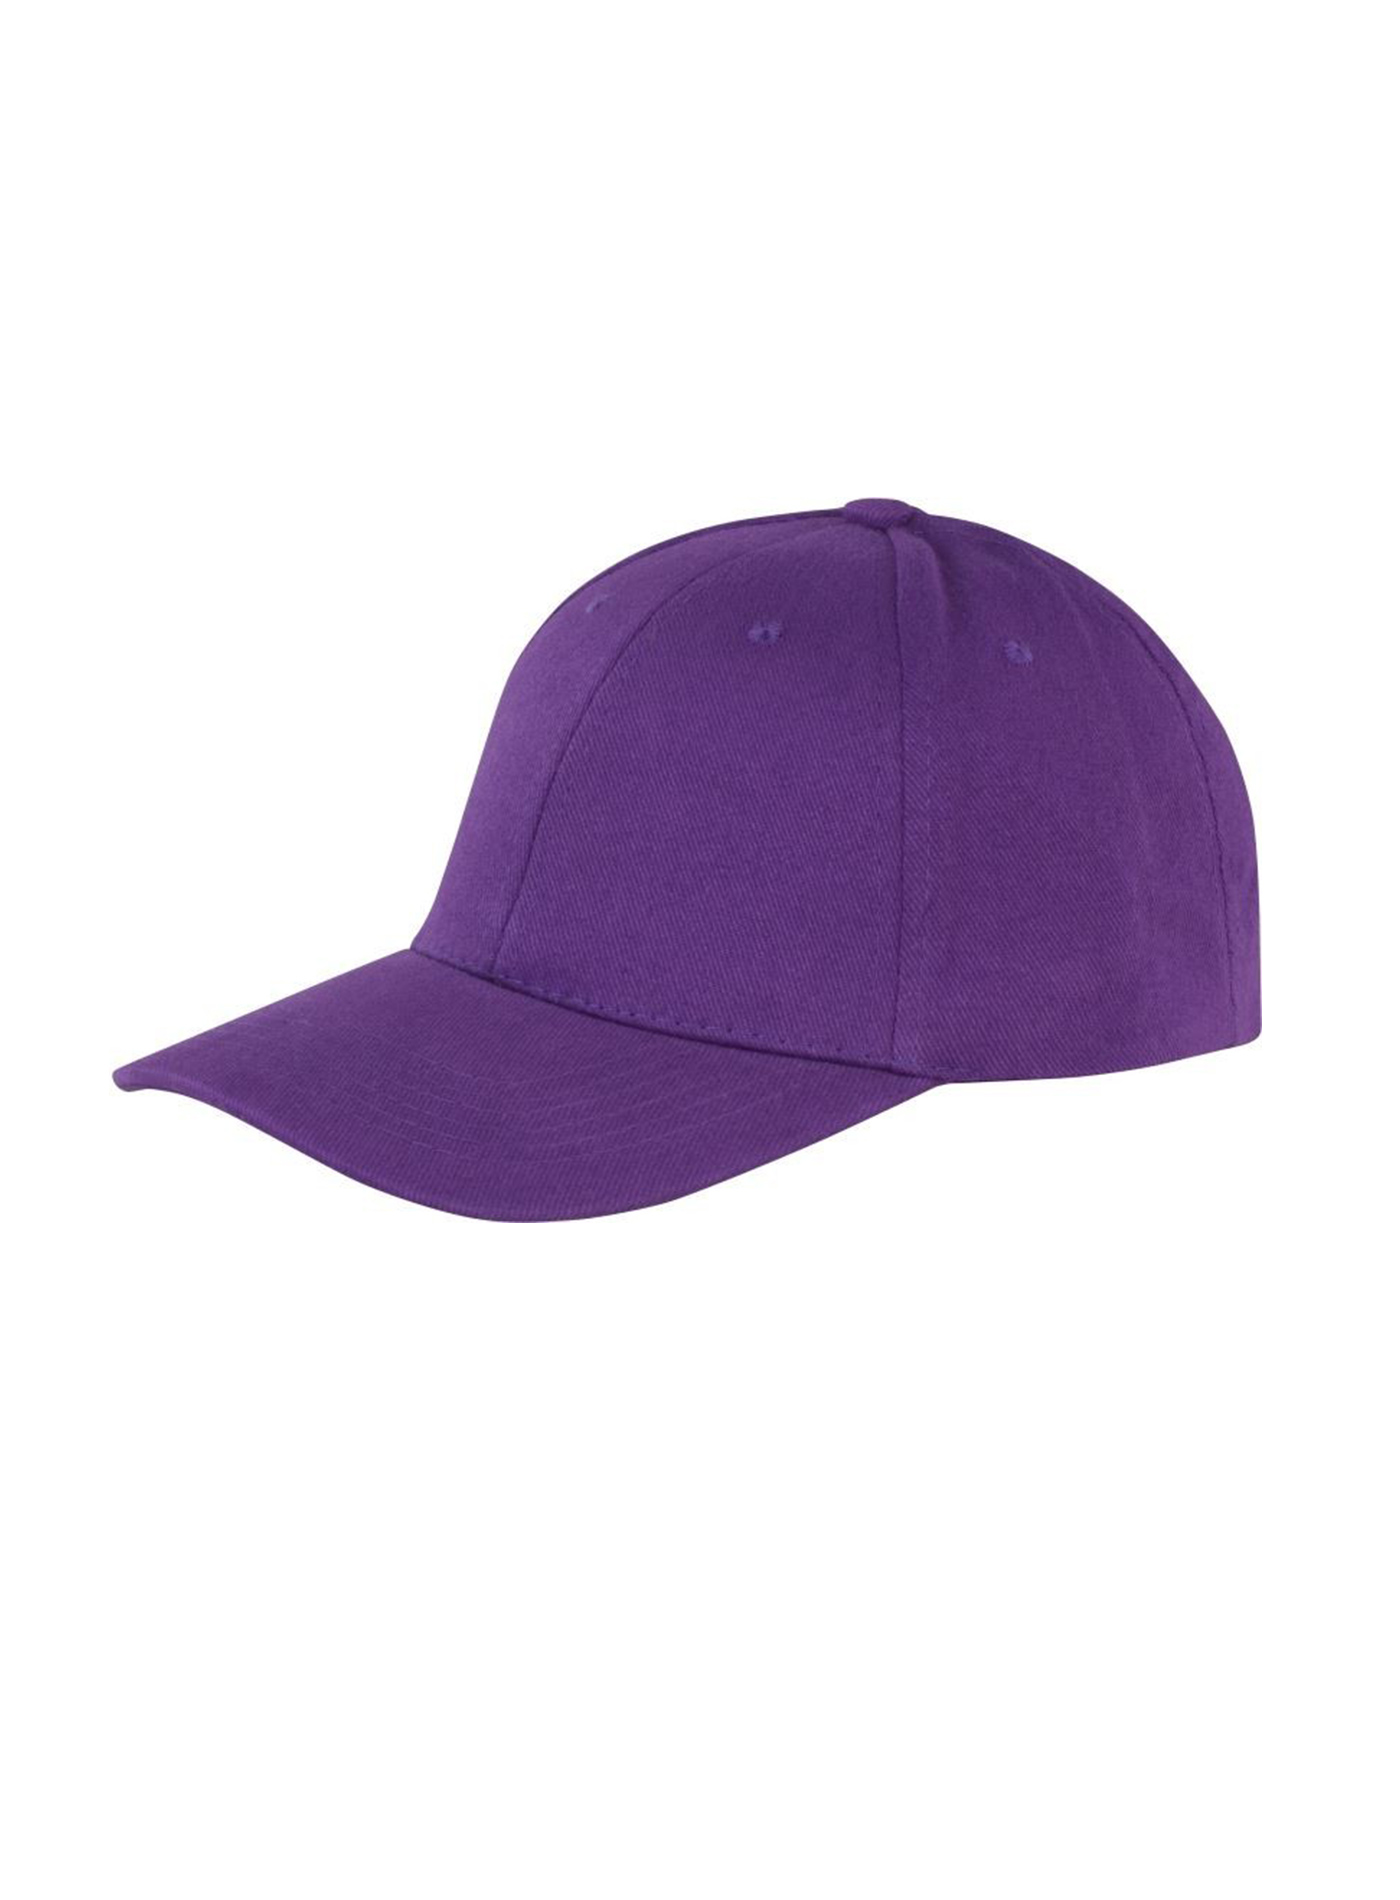 Kšiltovka Result headwear s nízkým profilem - fialová univerzal